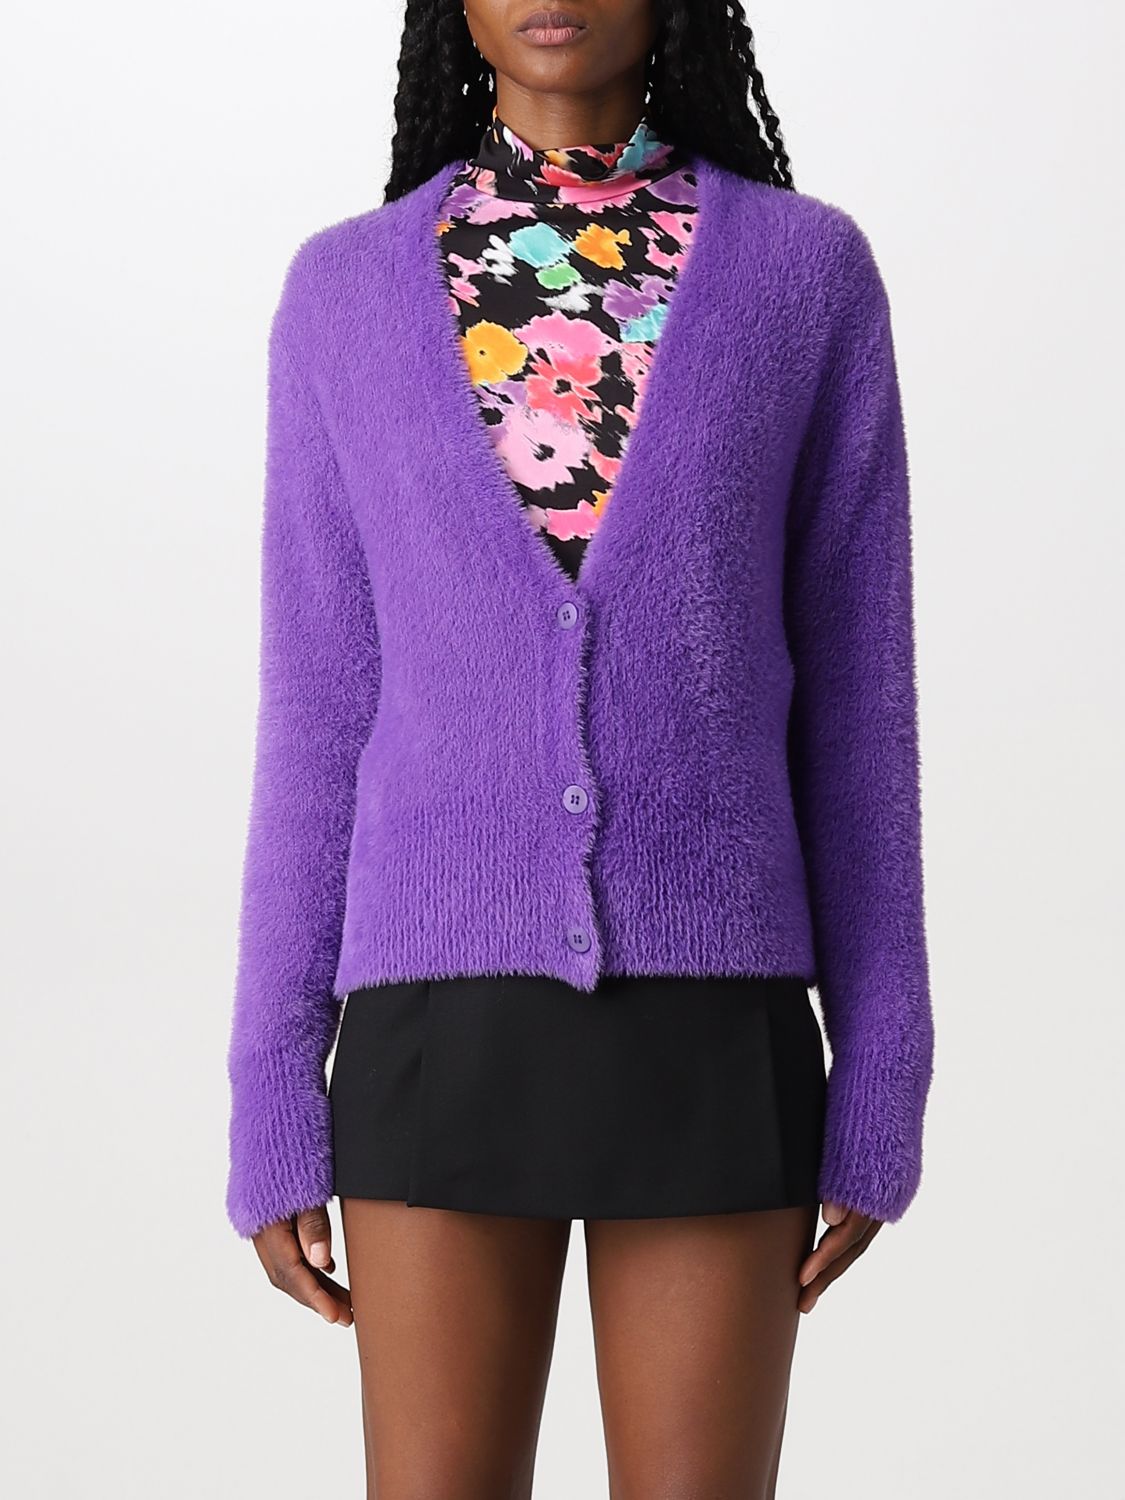 Femme Vêtements Sweats et pull overs Cardigans Cardigan Synthétique Kaos en coloris Violet 